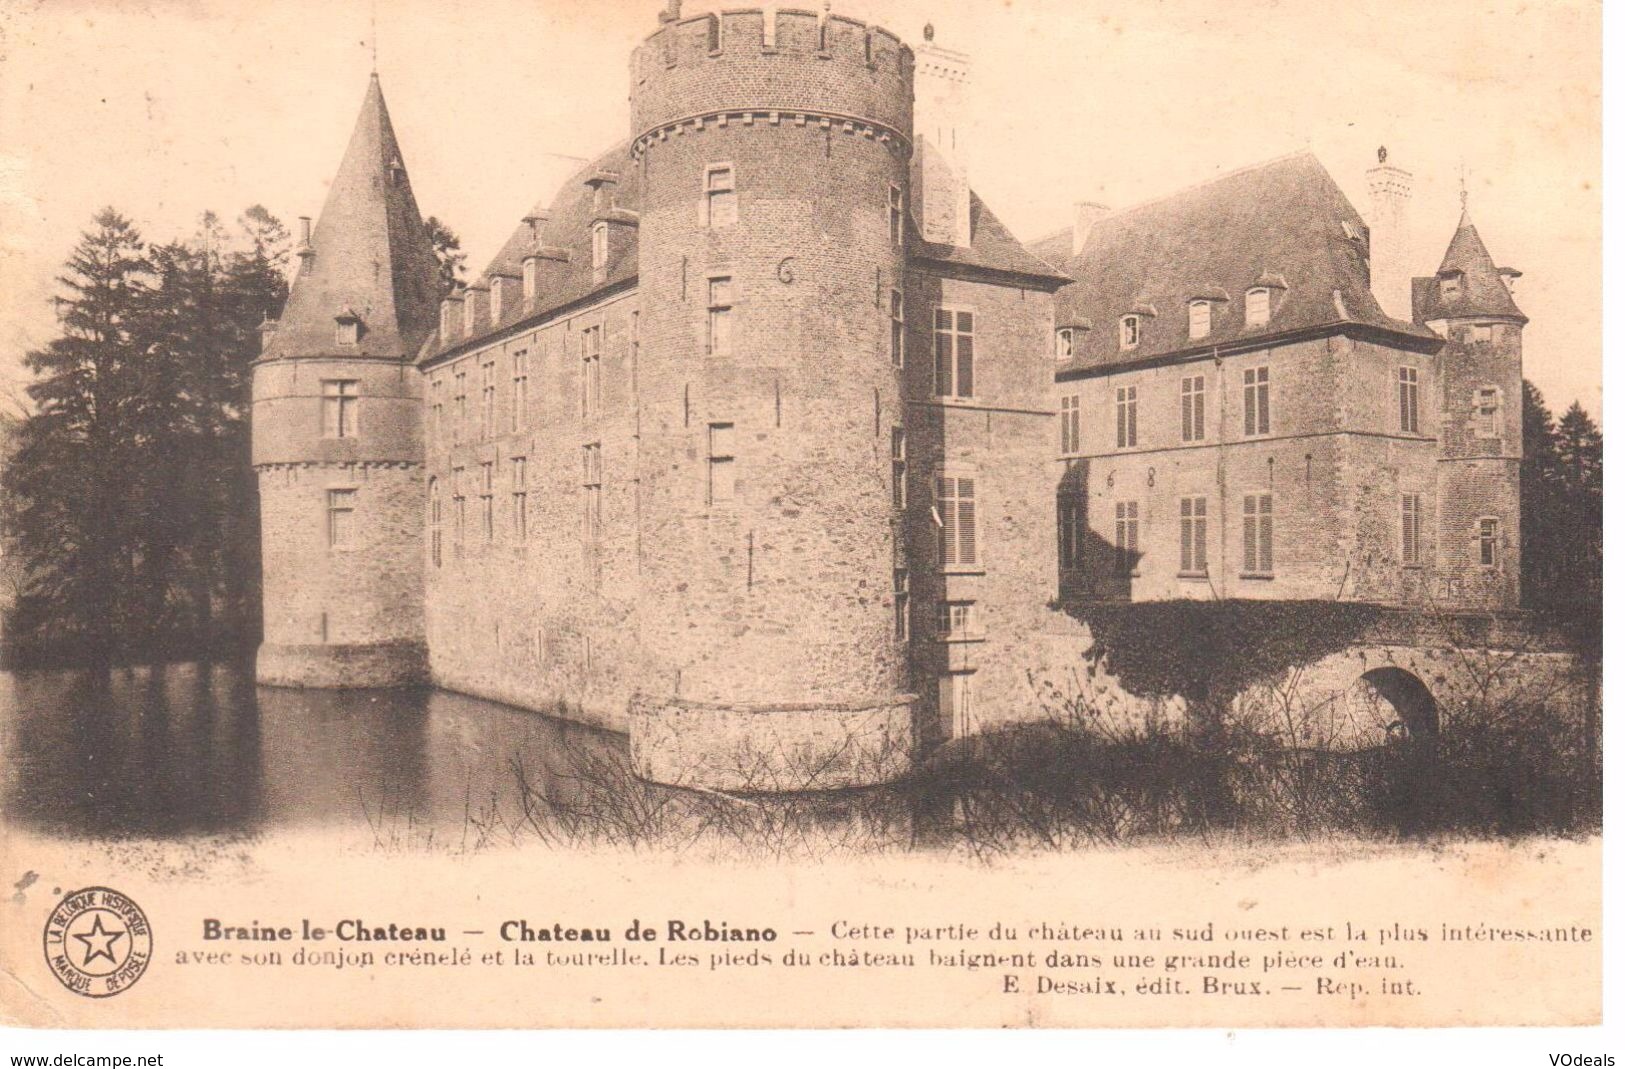 Château En Belgique - Braine Le Château - Château De Robiano - Châteaux